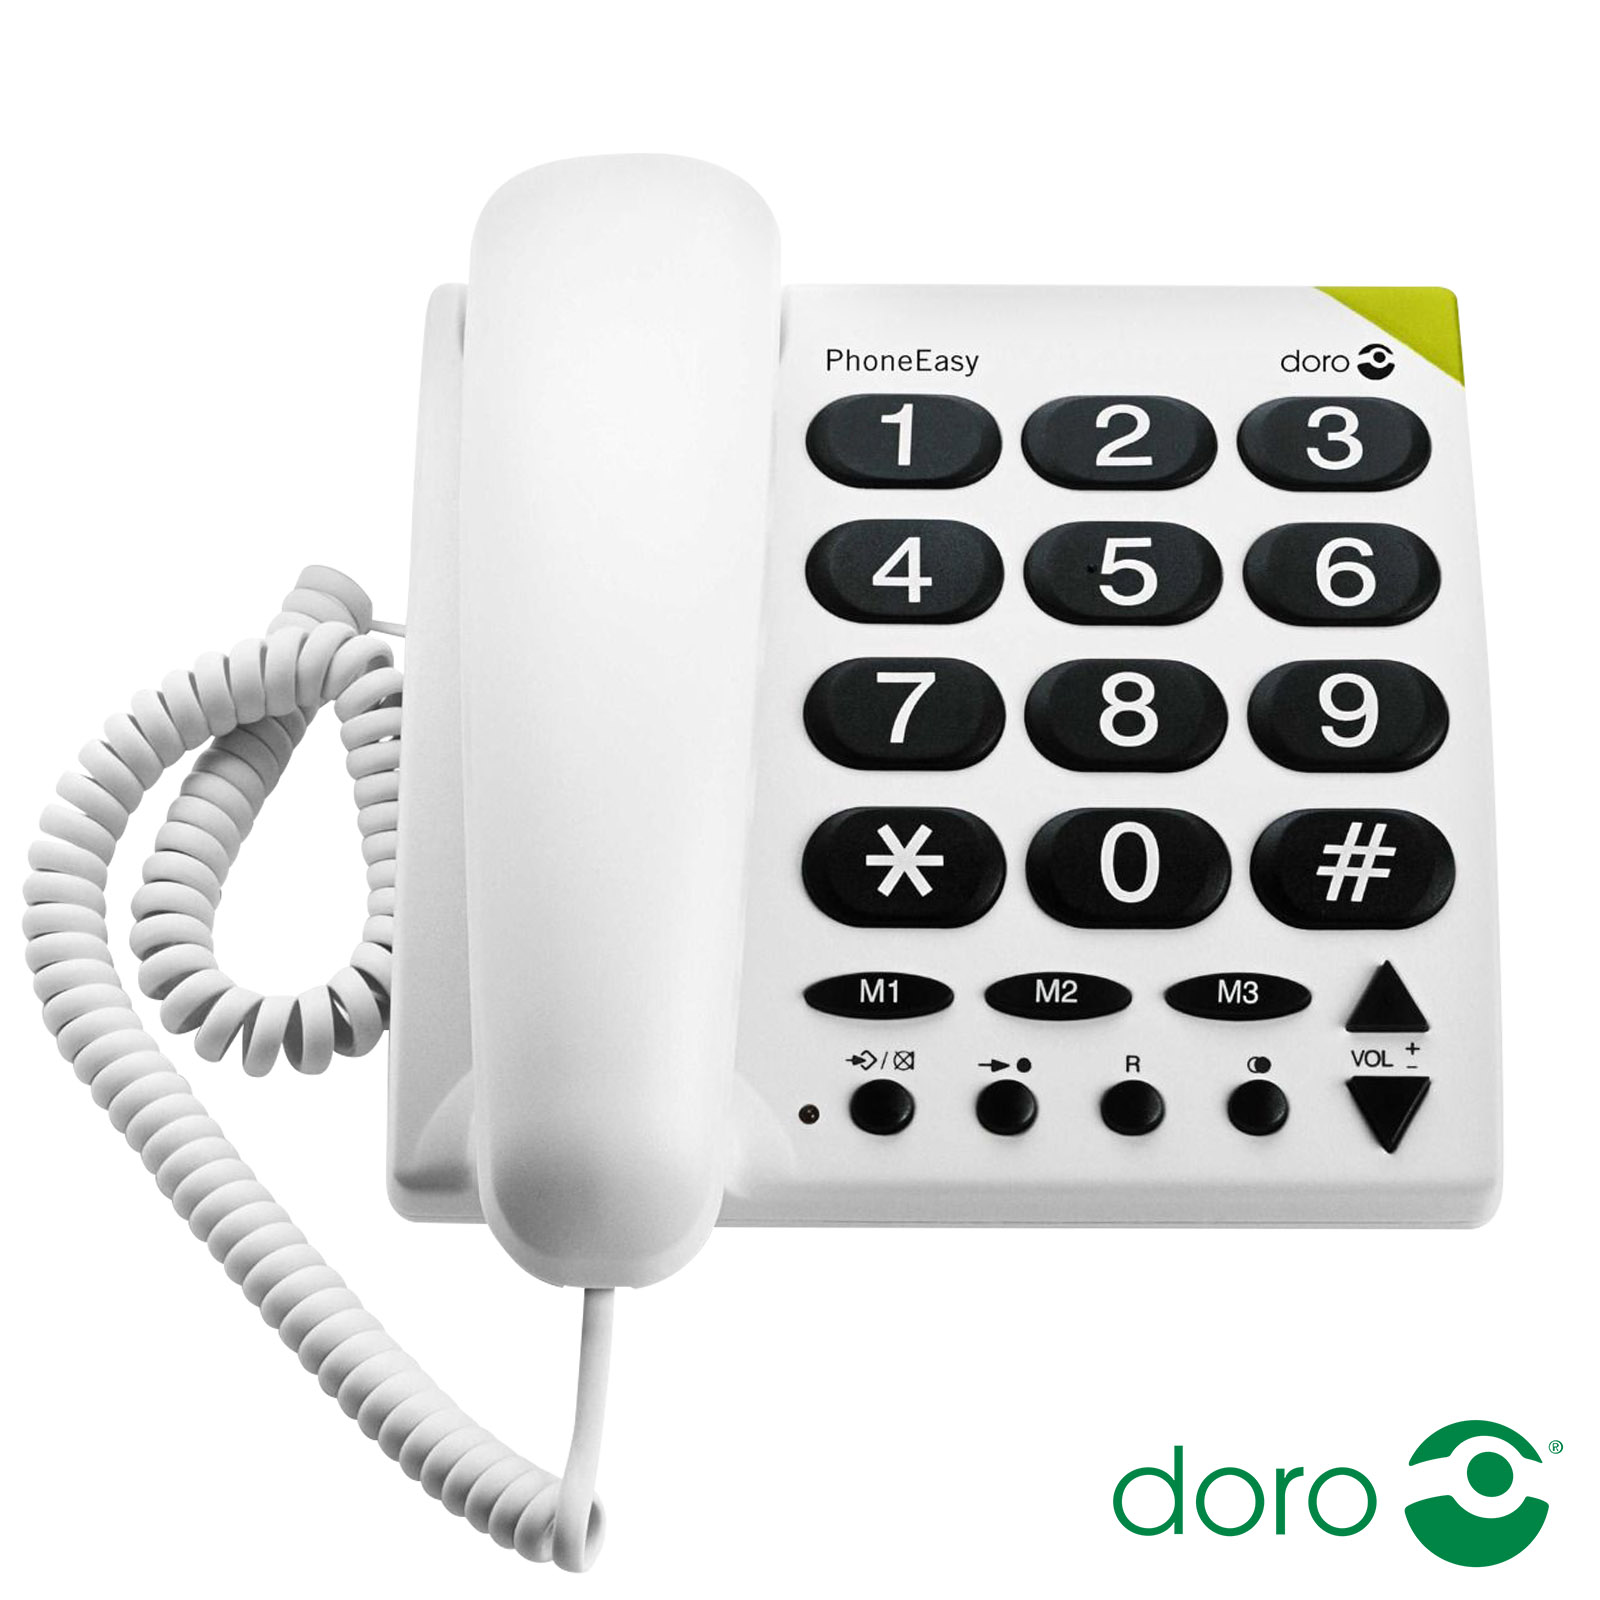 Doro Senior Schnurgebundenes Festnetztelefon mit großen Tasten und  Hörgerätekompatibilität, PhoneEasy 311c – Weiß - German